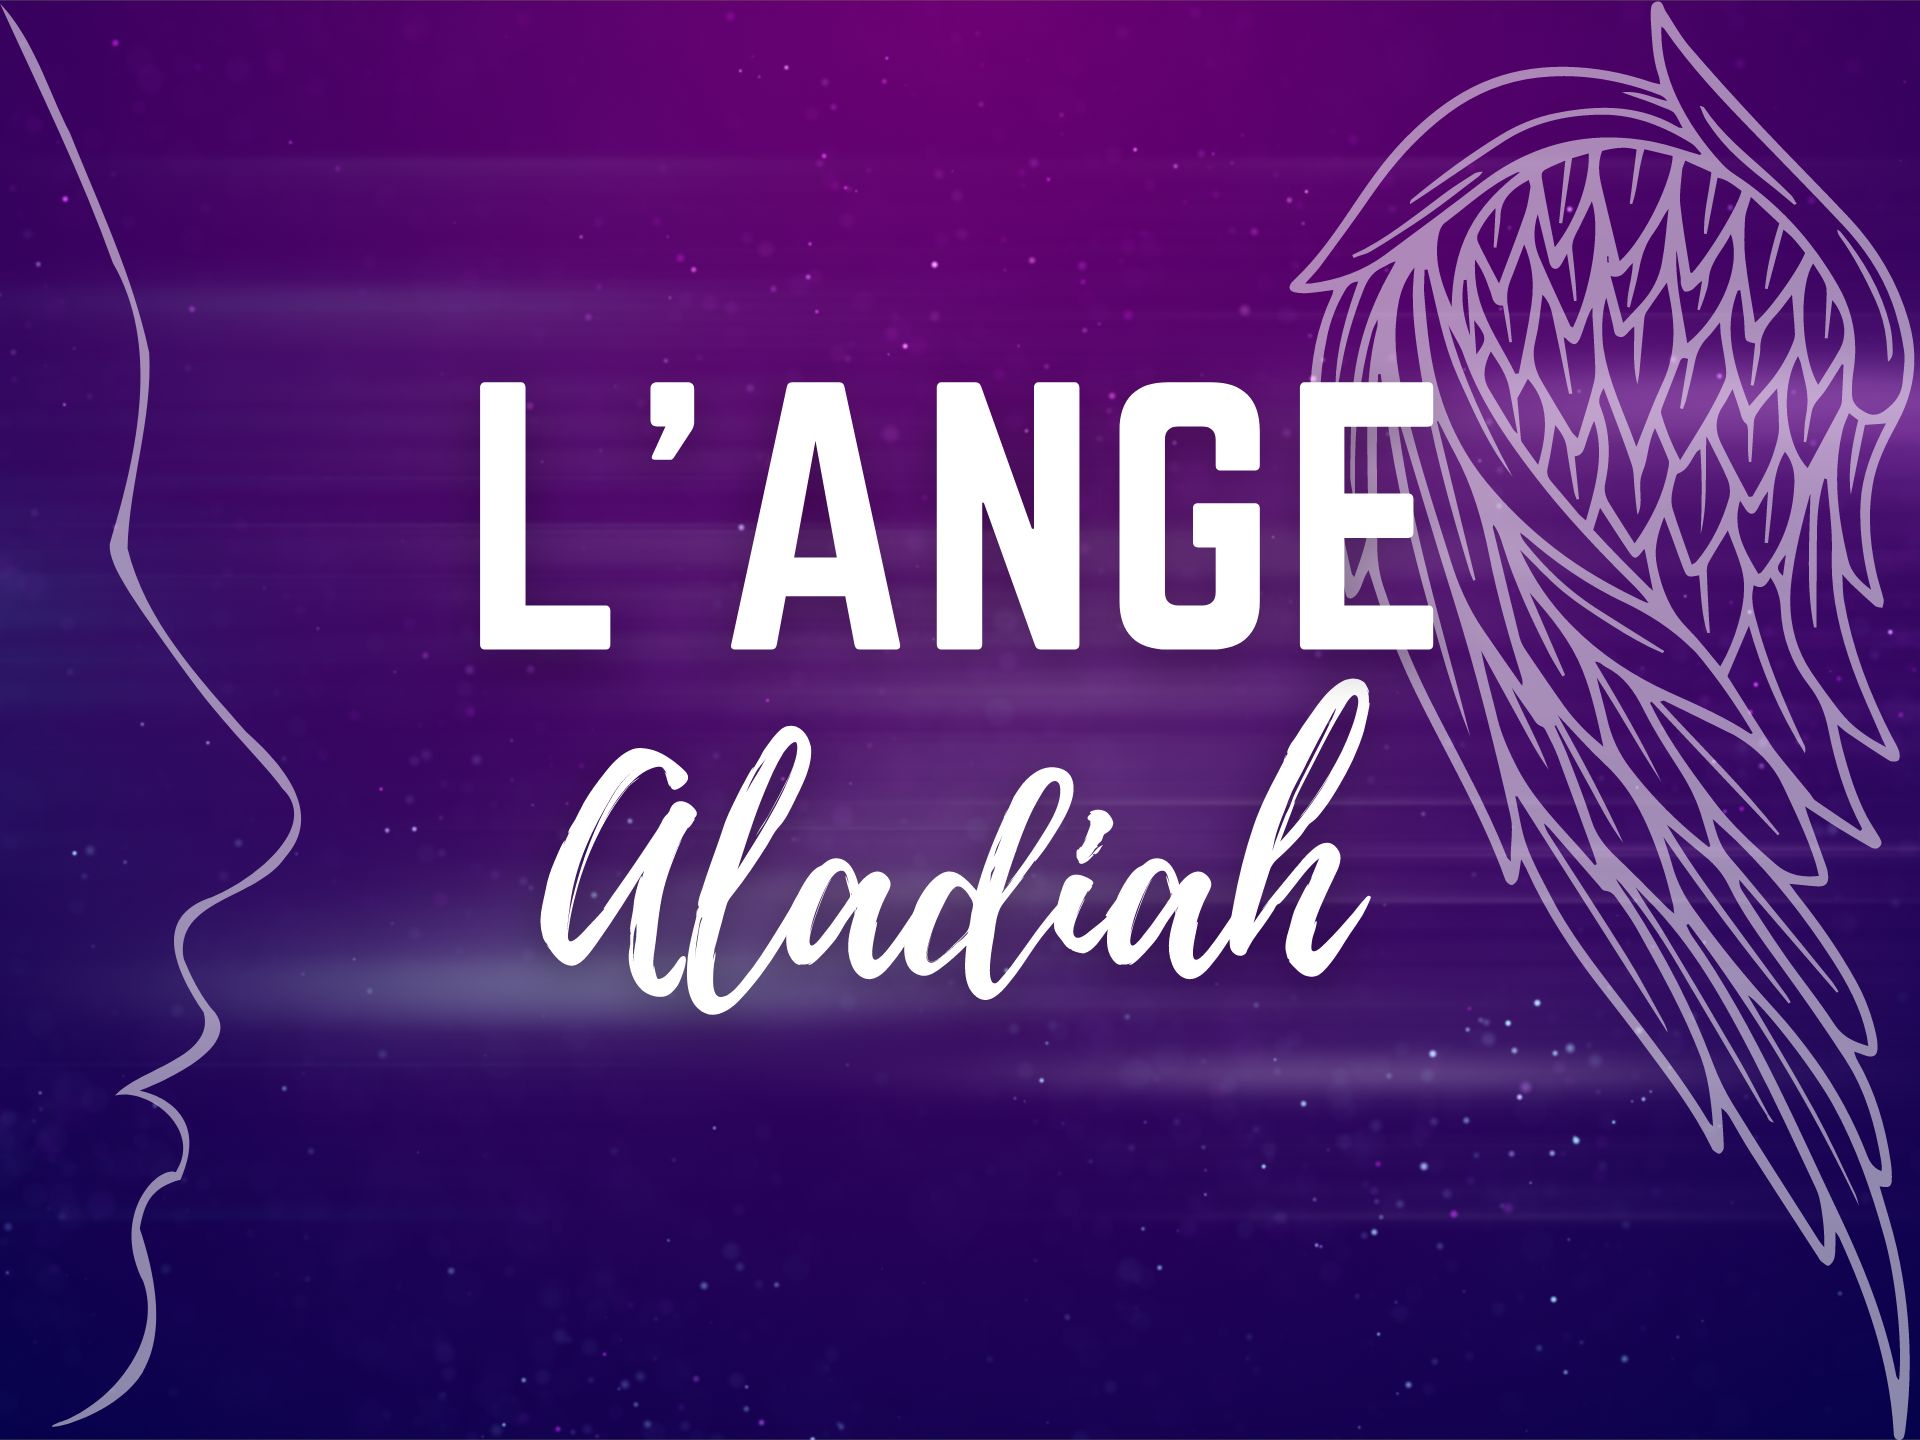 Ange Aladiah